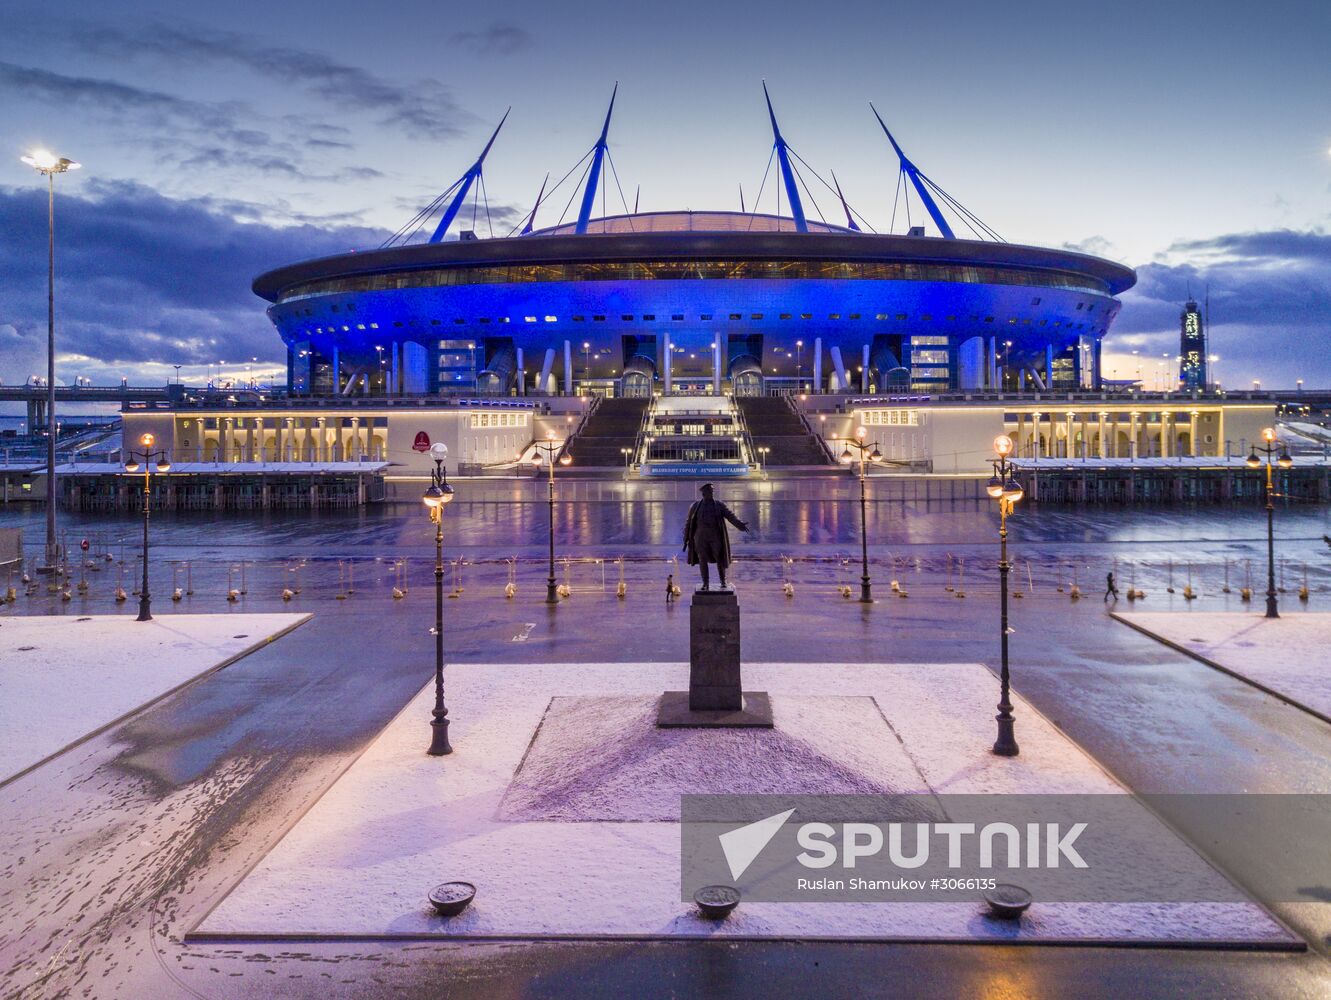 St. Petersburg Arena on Krestovsky Island in St. Petersburg